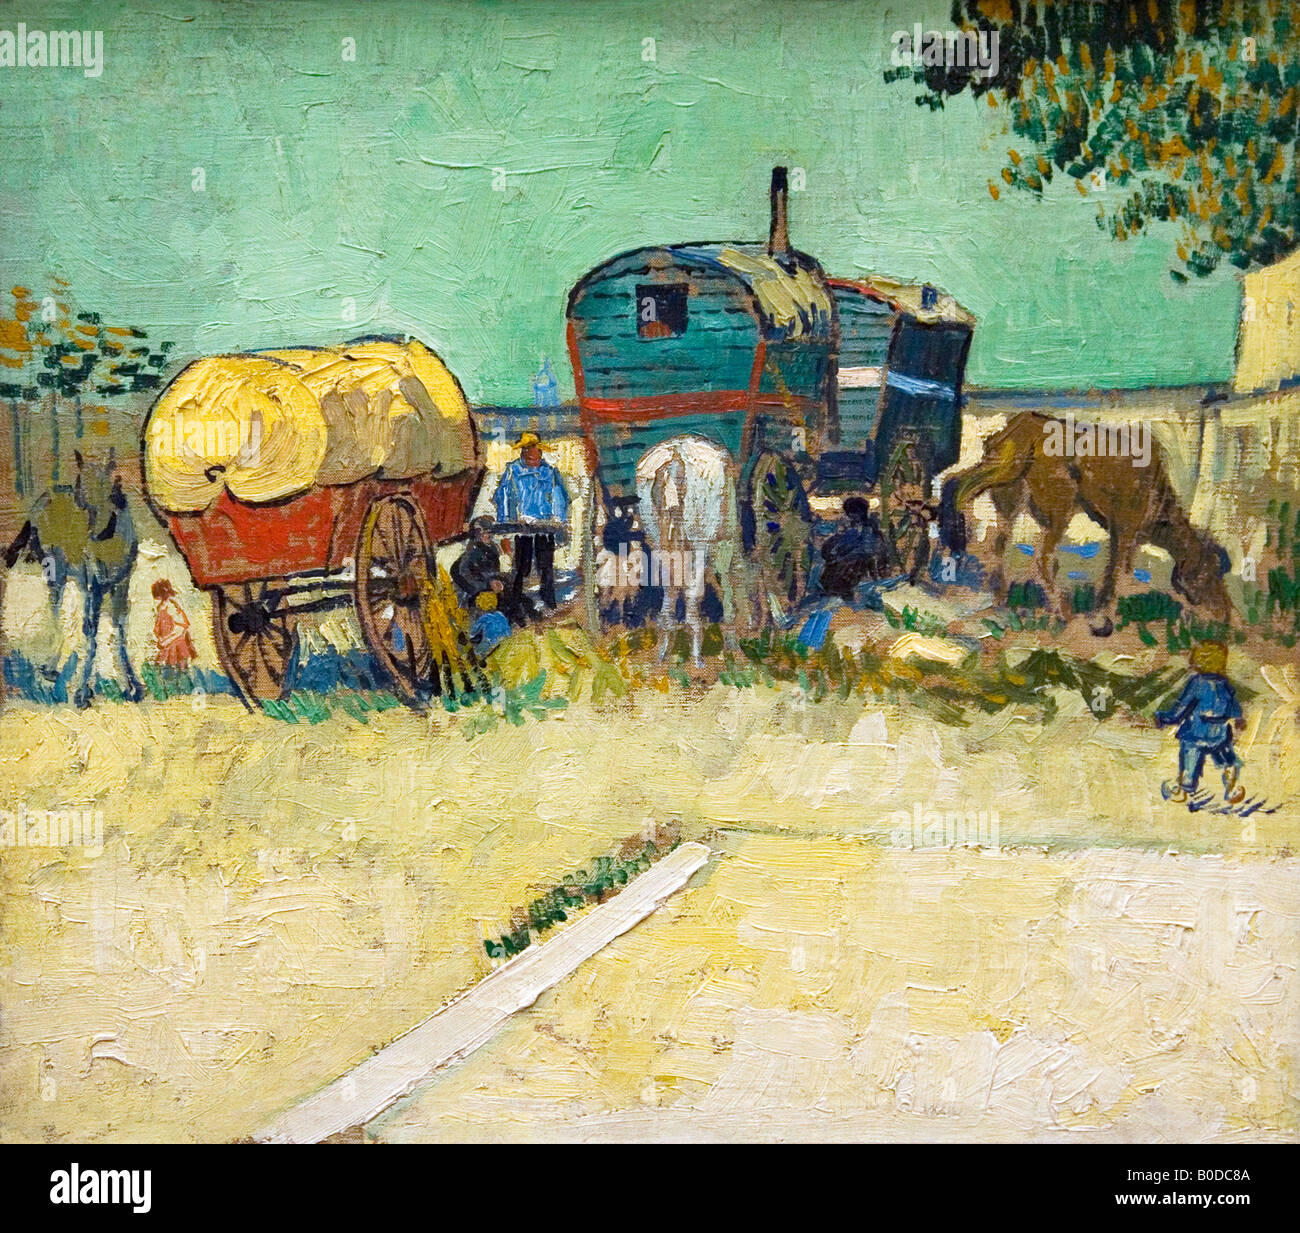 Encampment of Gypsies with Caravans near Arles painted in 1888 by Vincent van Gogh Musee D'Orsay Paris Stock Photo